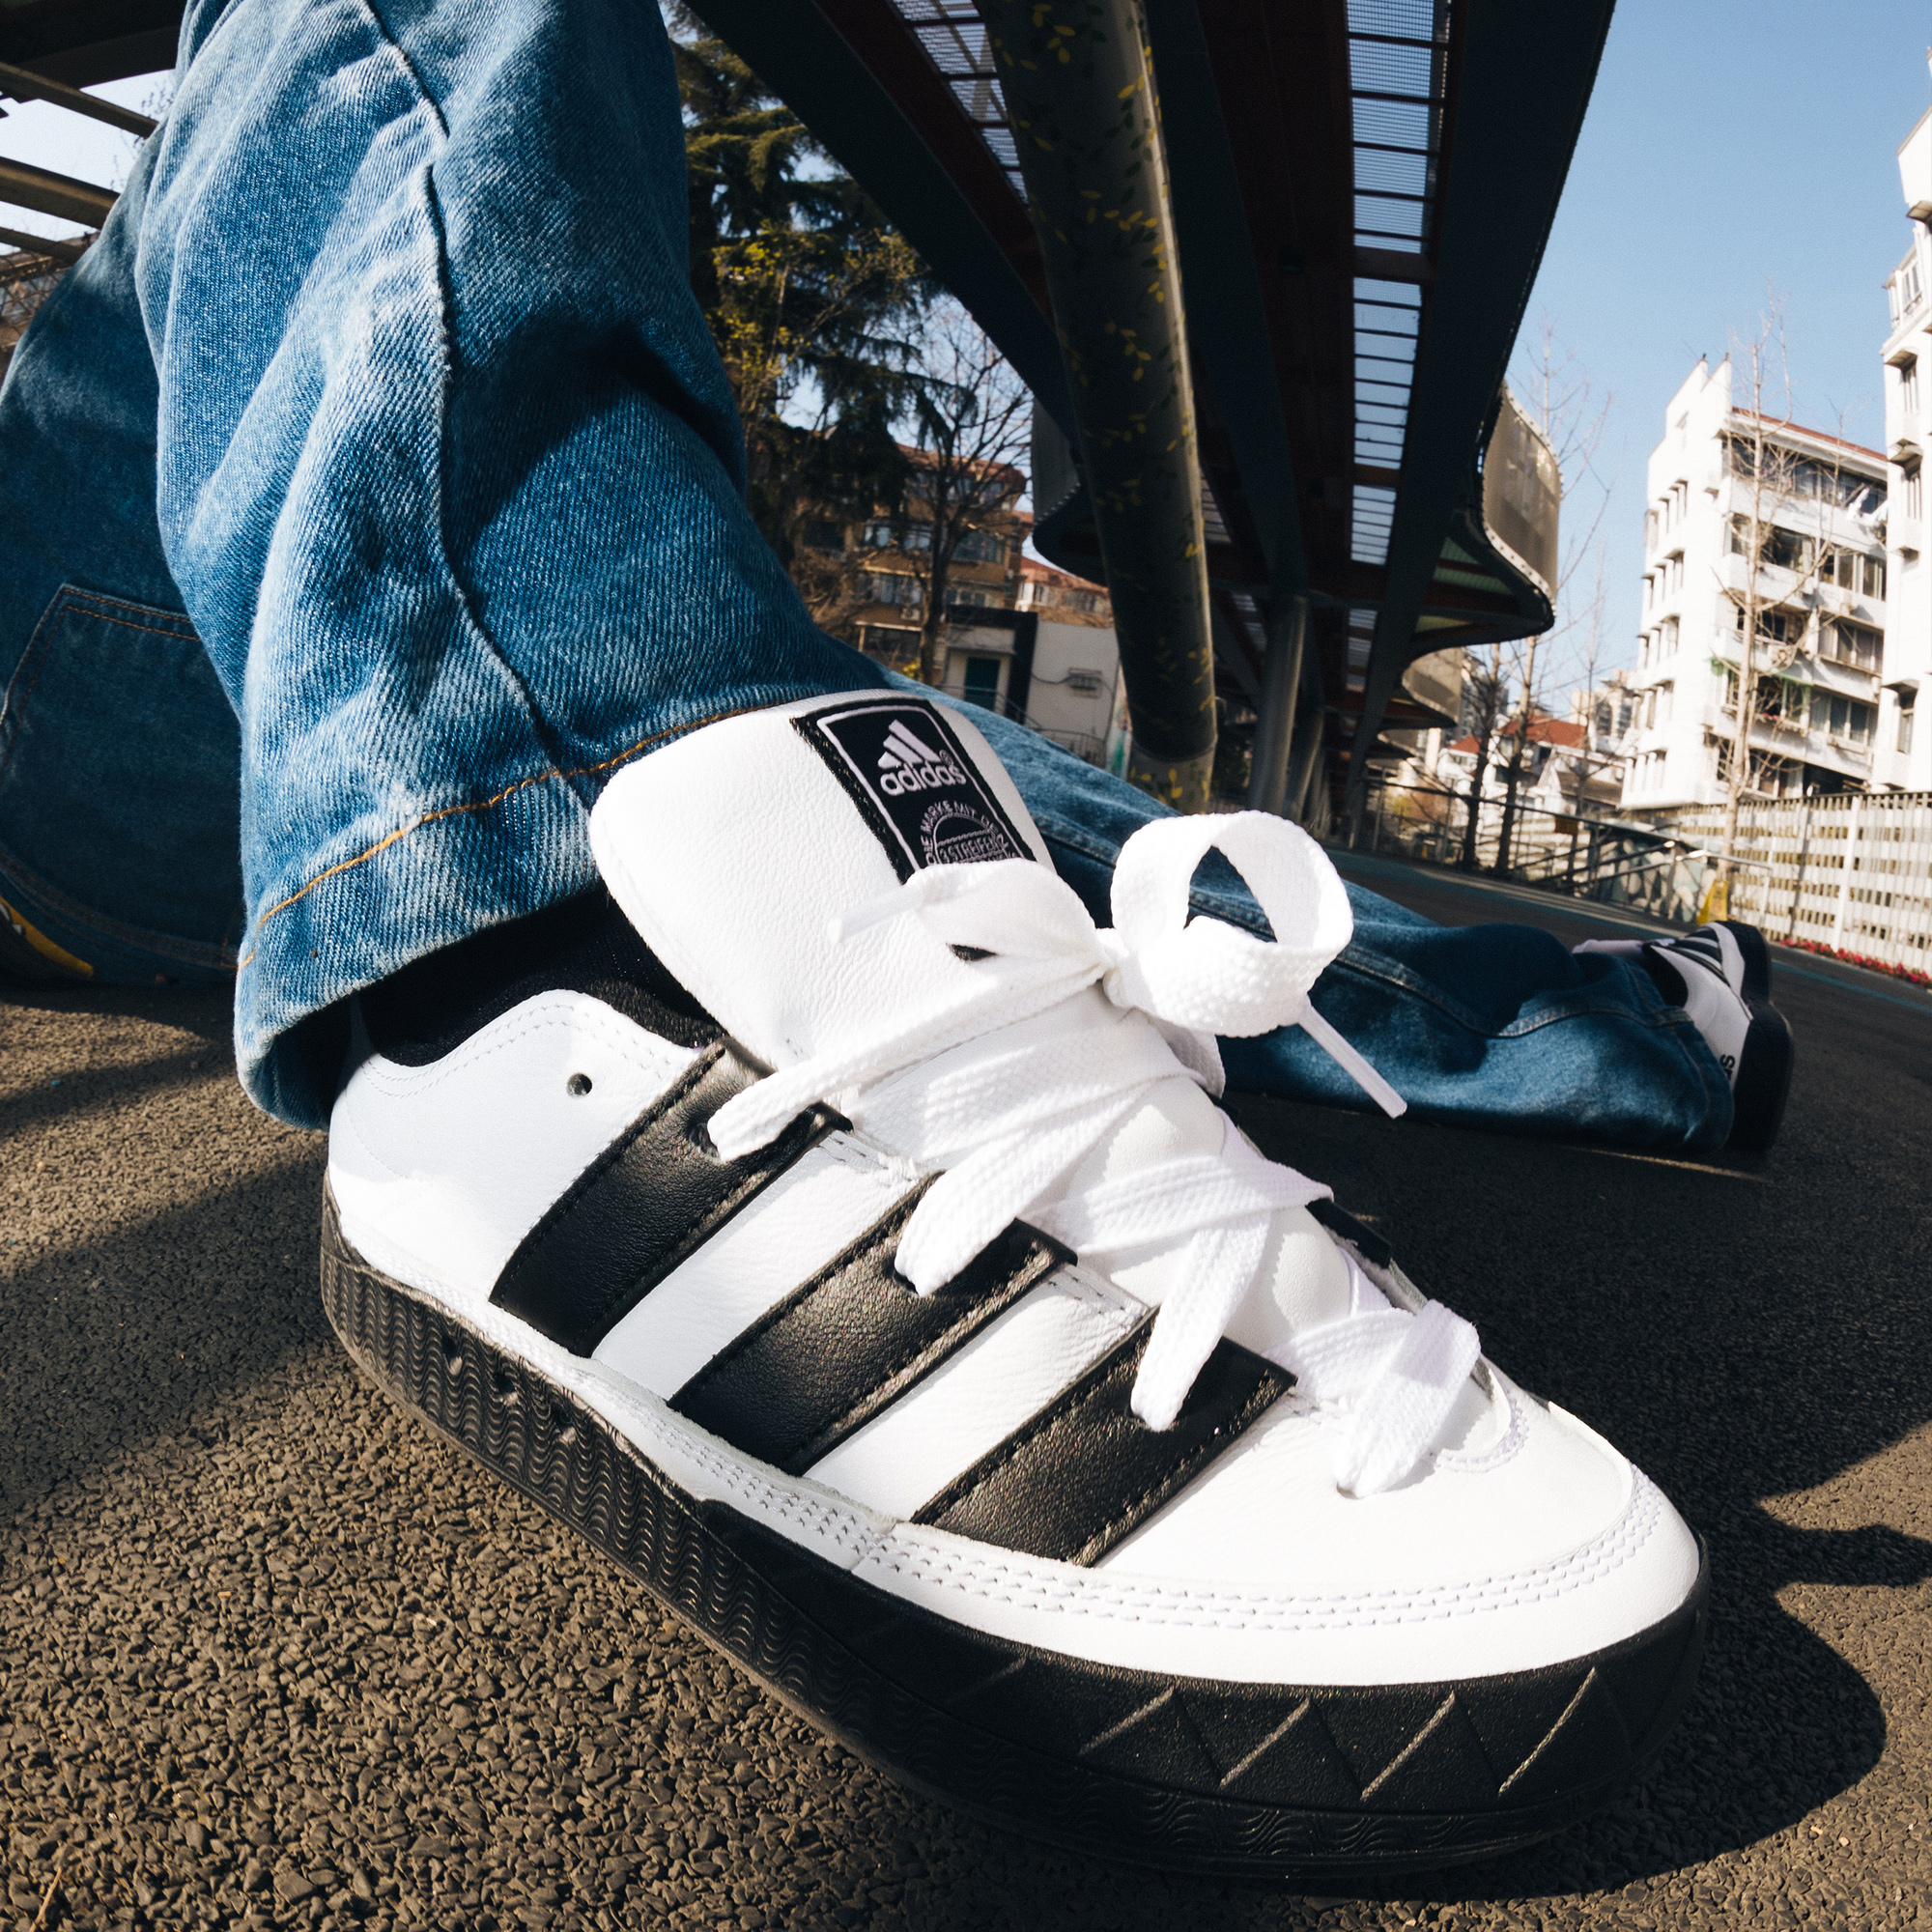 ATMOS ADIMATIC 運動鞋- 白色| 男子| adidas(愛迪達)香港官方網上商店